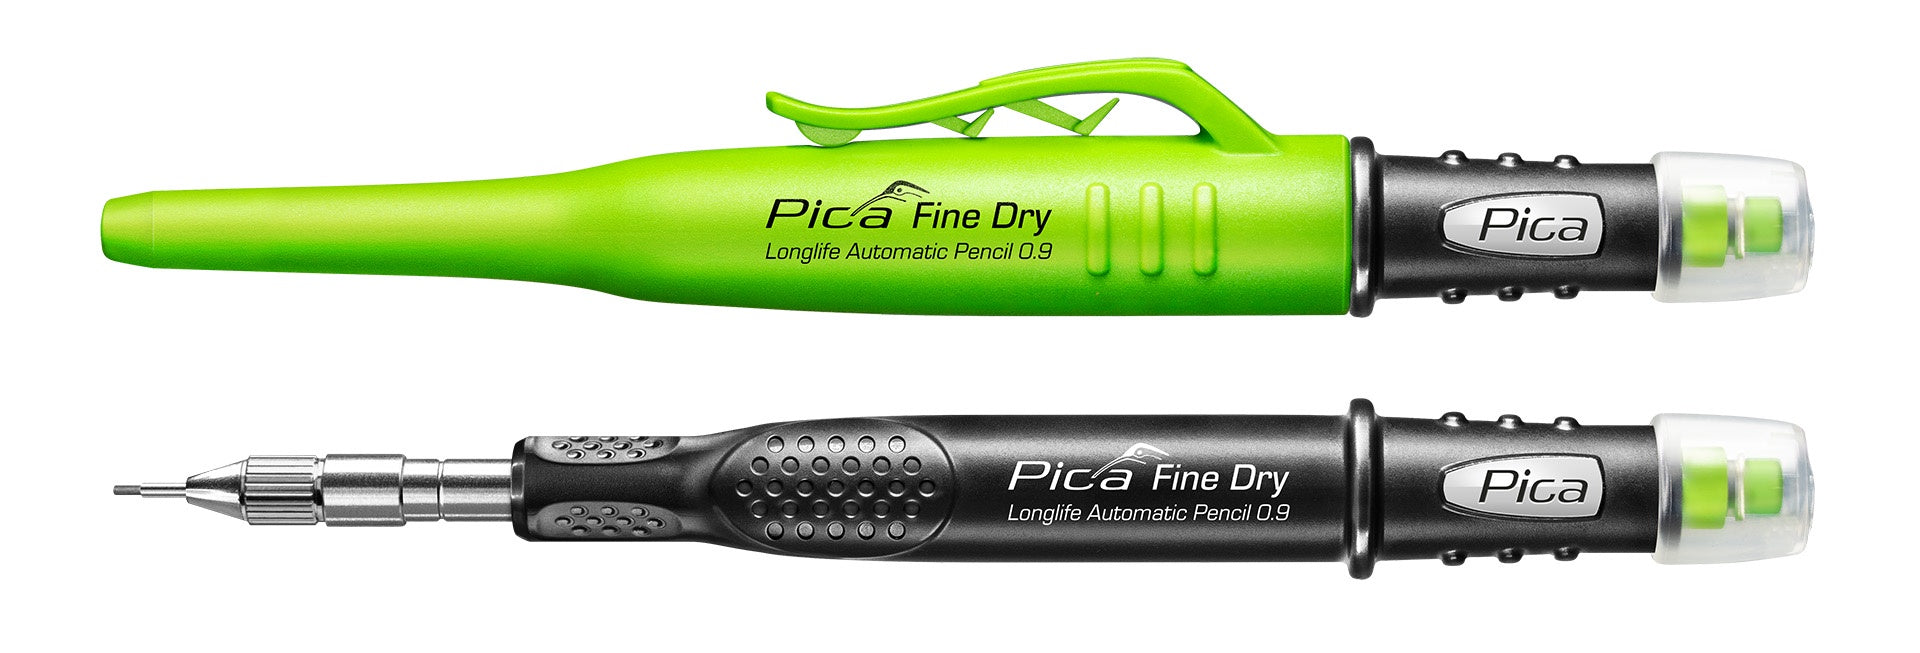 Pica Fine Dry Pencil